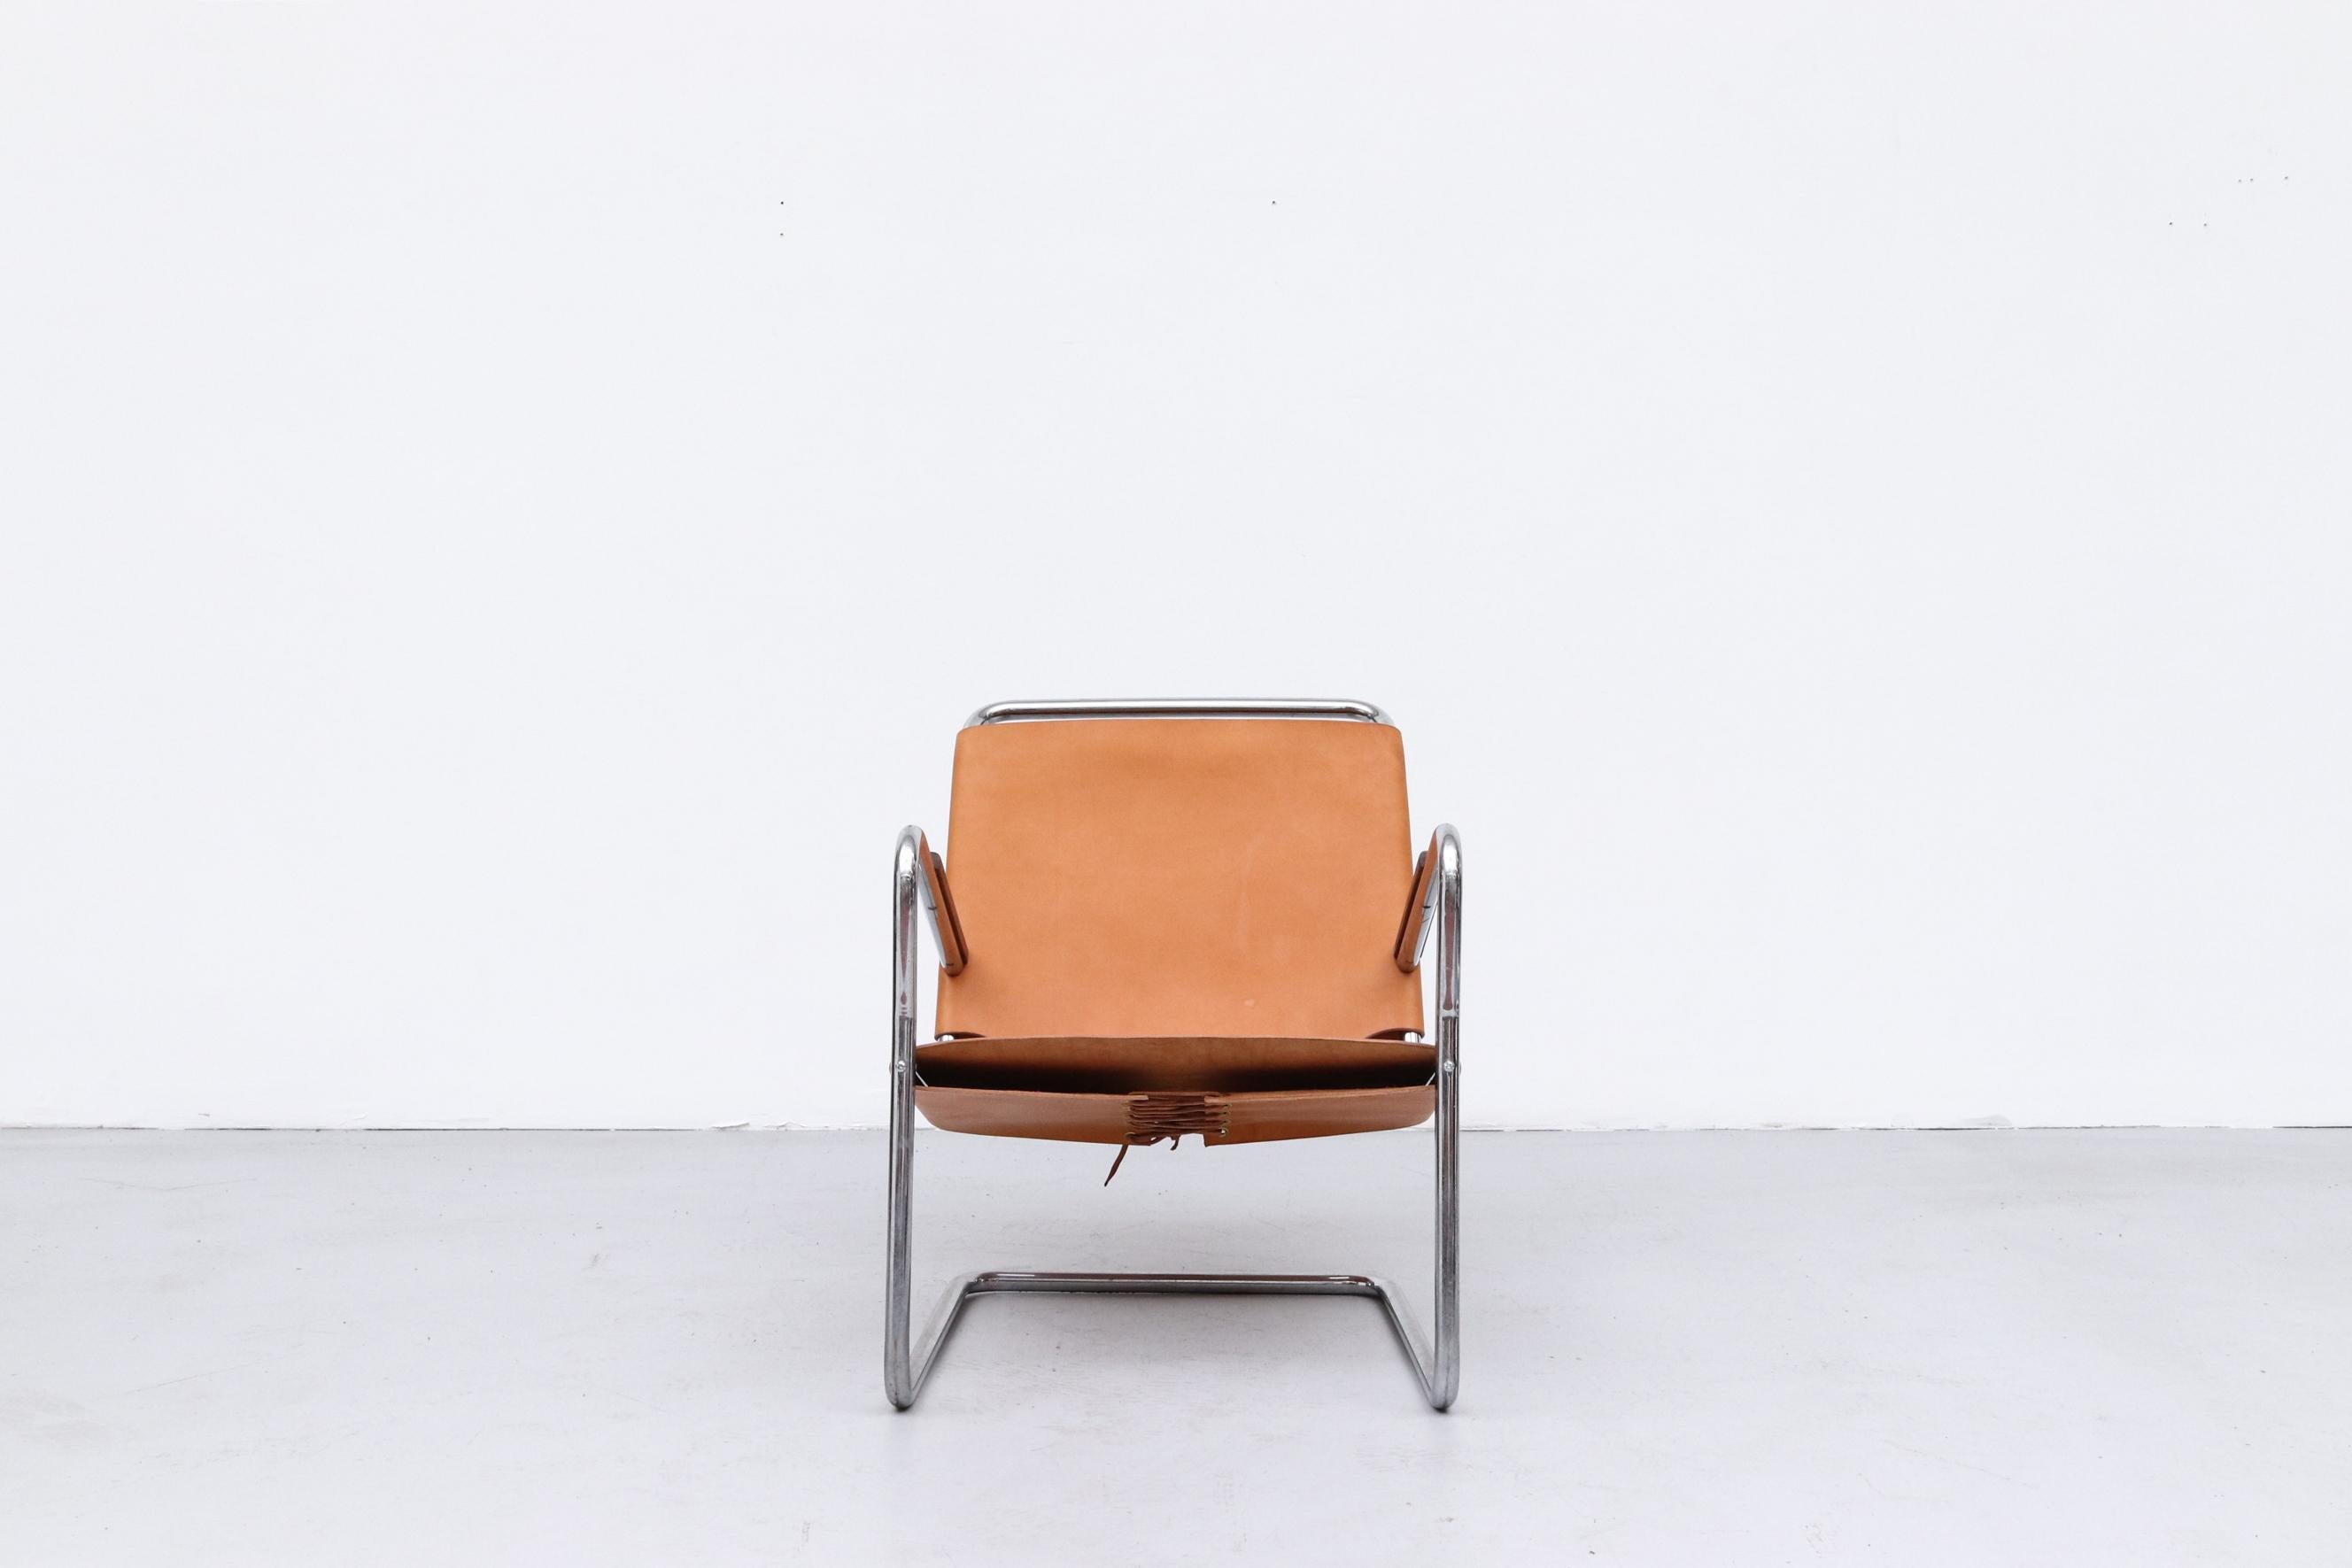 1930's Bas Van Pelt Leder und Chrom Rohr Lounge Chair mit Holz Armlehnen und New Natural Leder Sitz mit geschnürt Leder Schließung in den Rücken. 
Van Pelt war zu seiner Zeit ein zukunftsweisender Designer und  nur in einem Stil entworfen, der dem